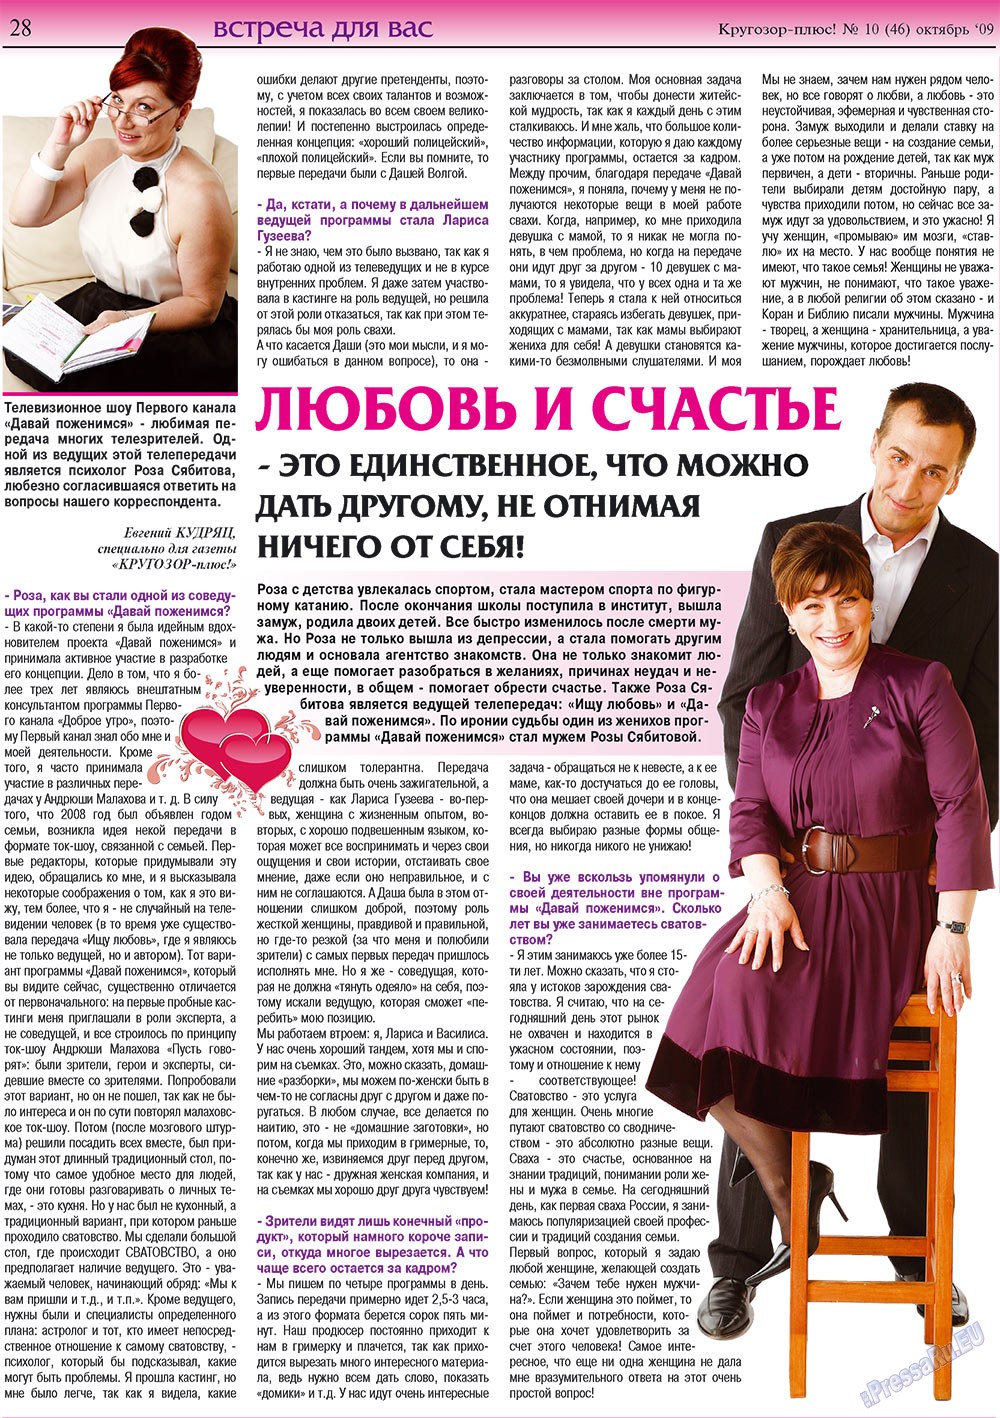 Кругозор плюс!, газета. 2009 №10 стр.28